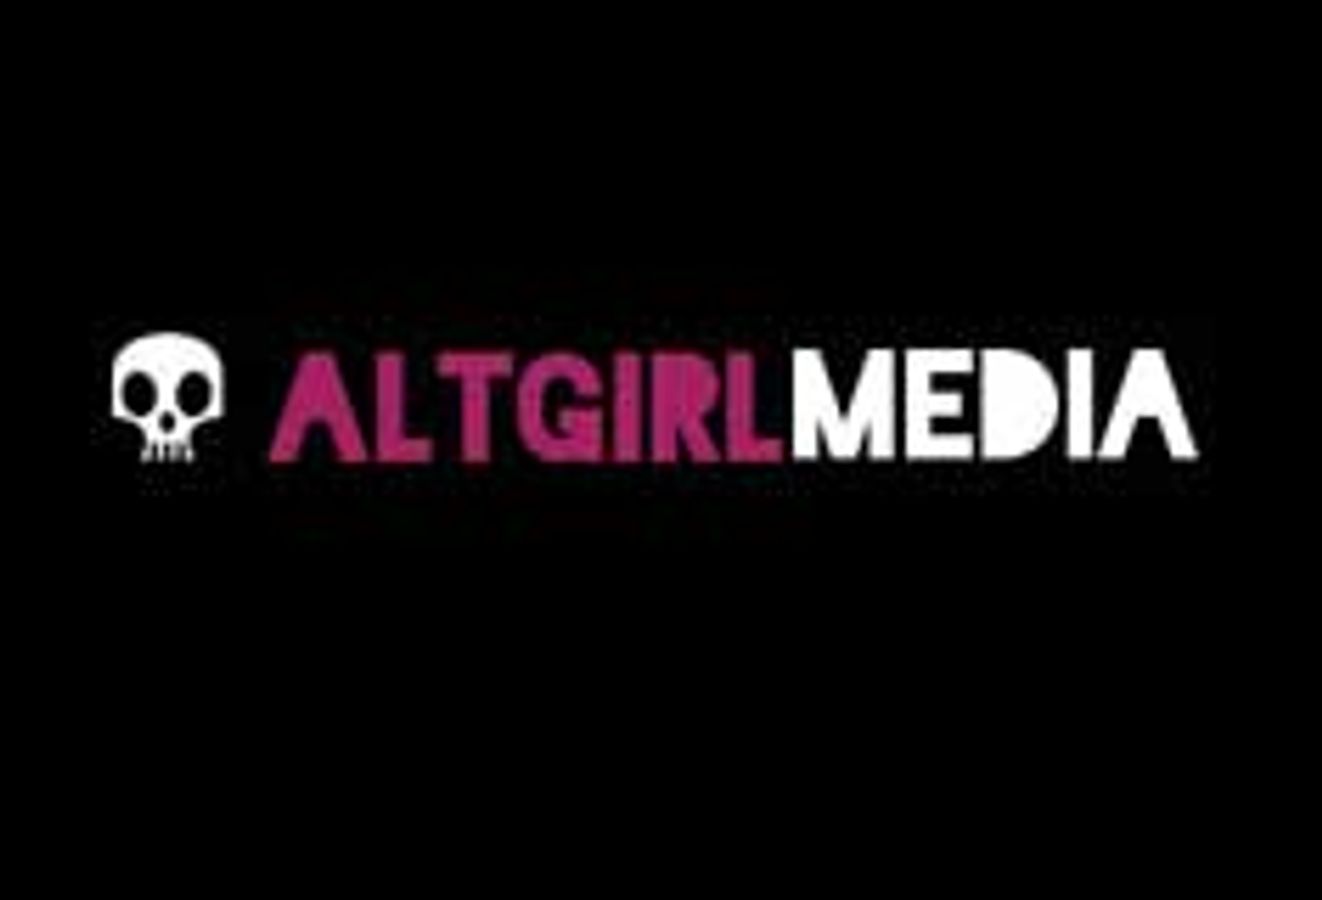 Altgirlmedia.com